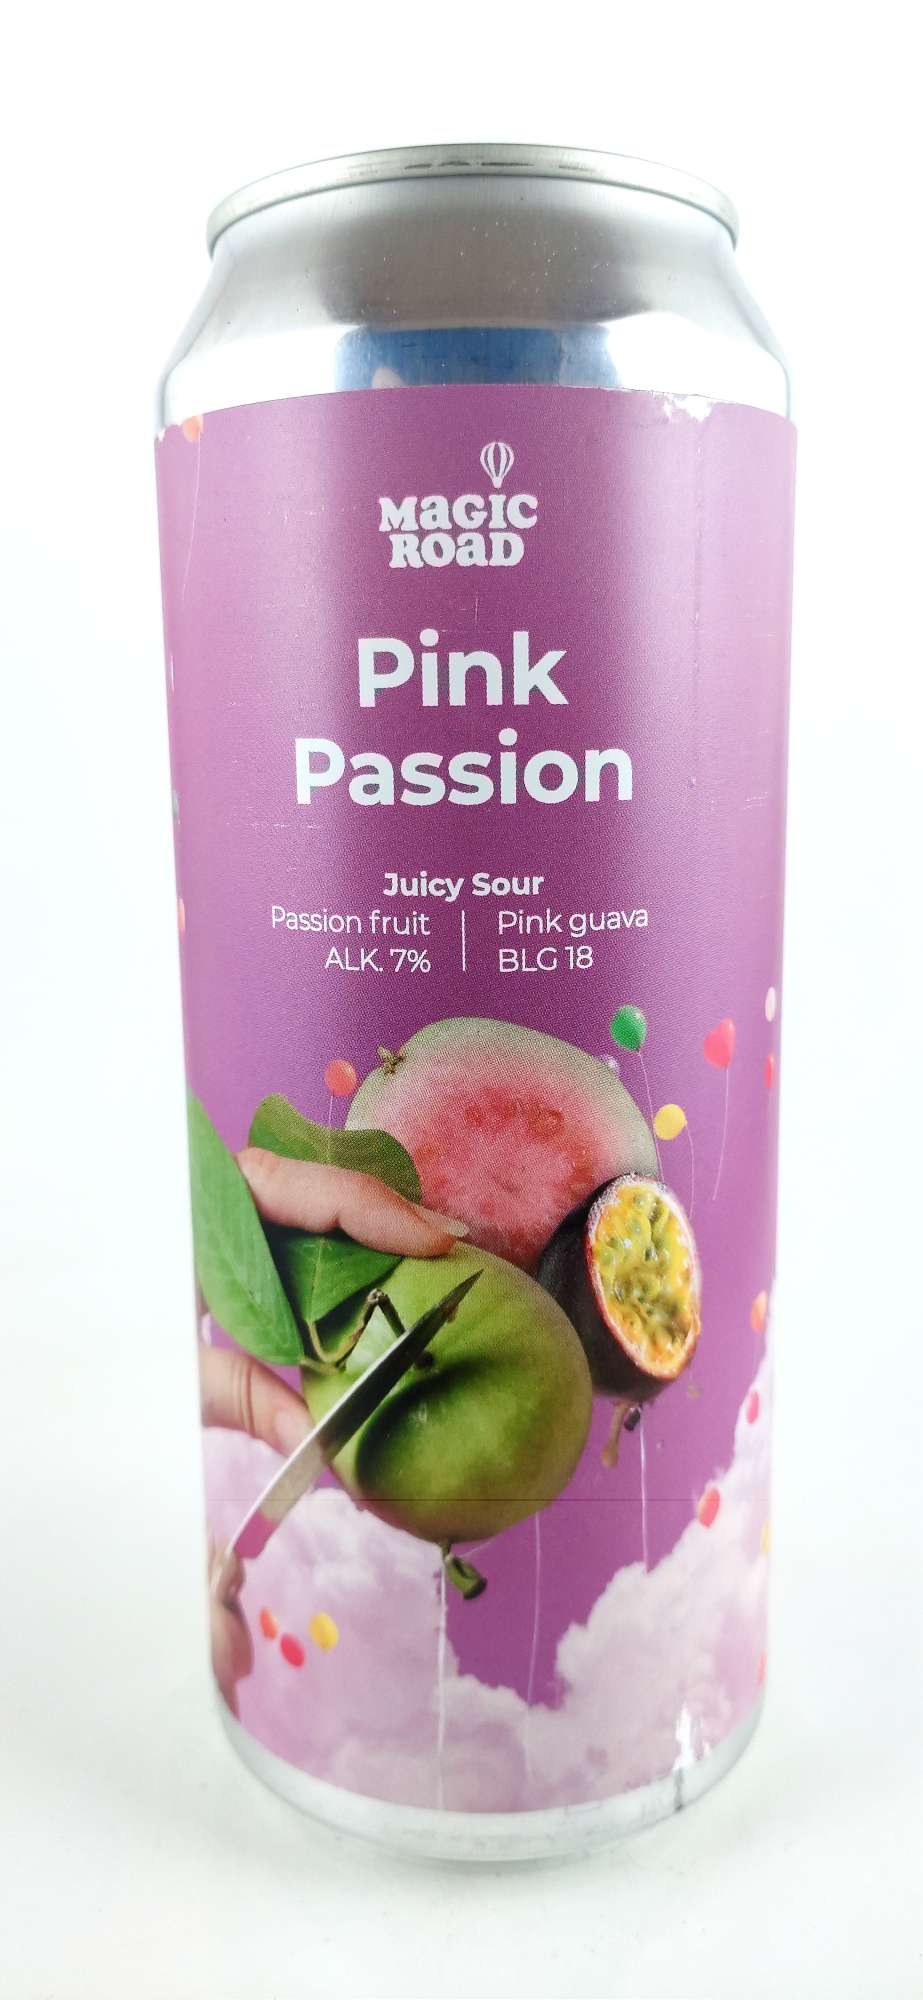 Magic Road Pink Passion Fruit Sour Juicy Sour Passion fruit, Pink Guava 18°